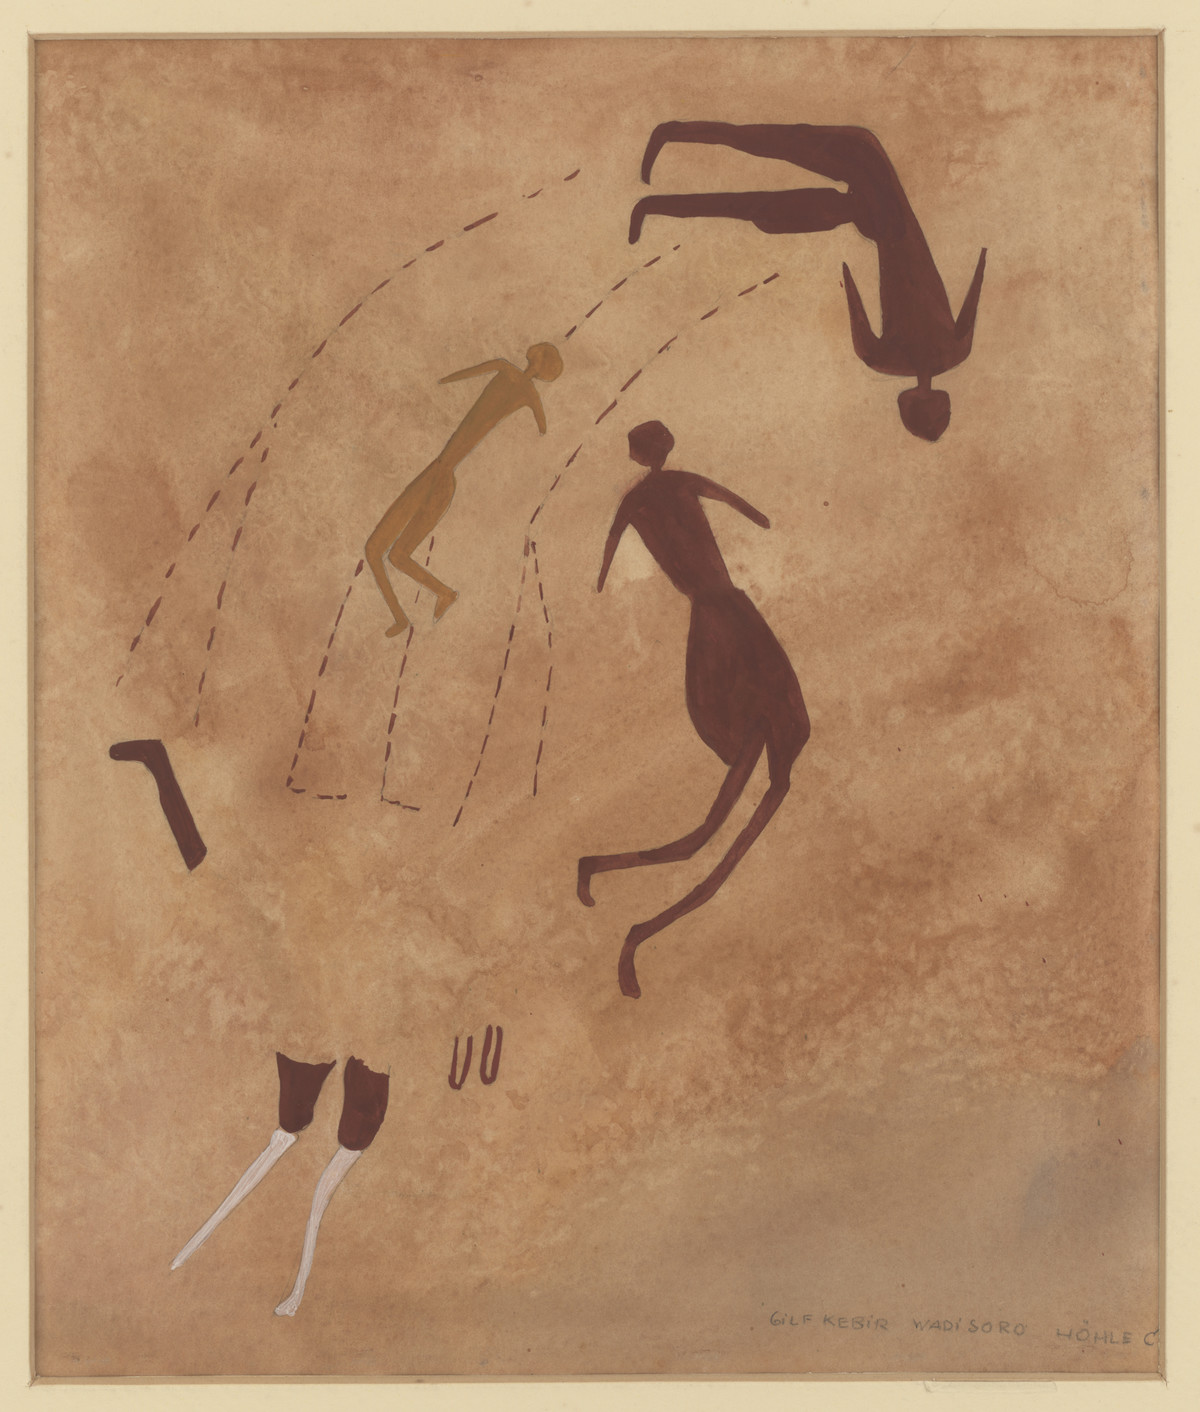 Drei menschliche Figuren, Ägypten, Gilf el-Kebir, Wadi Sura, 1933, Elisabeth Charlotte Pauli, Aquarell auf Papier, 34 × 35 cm © Frobenius-Institut